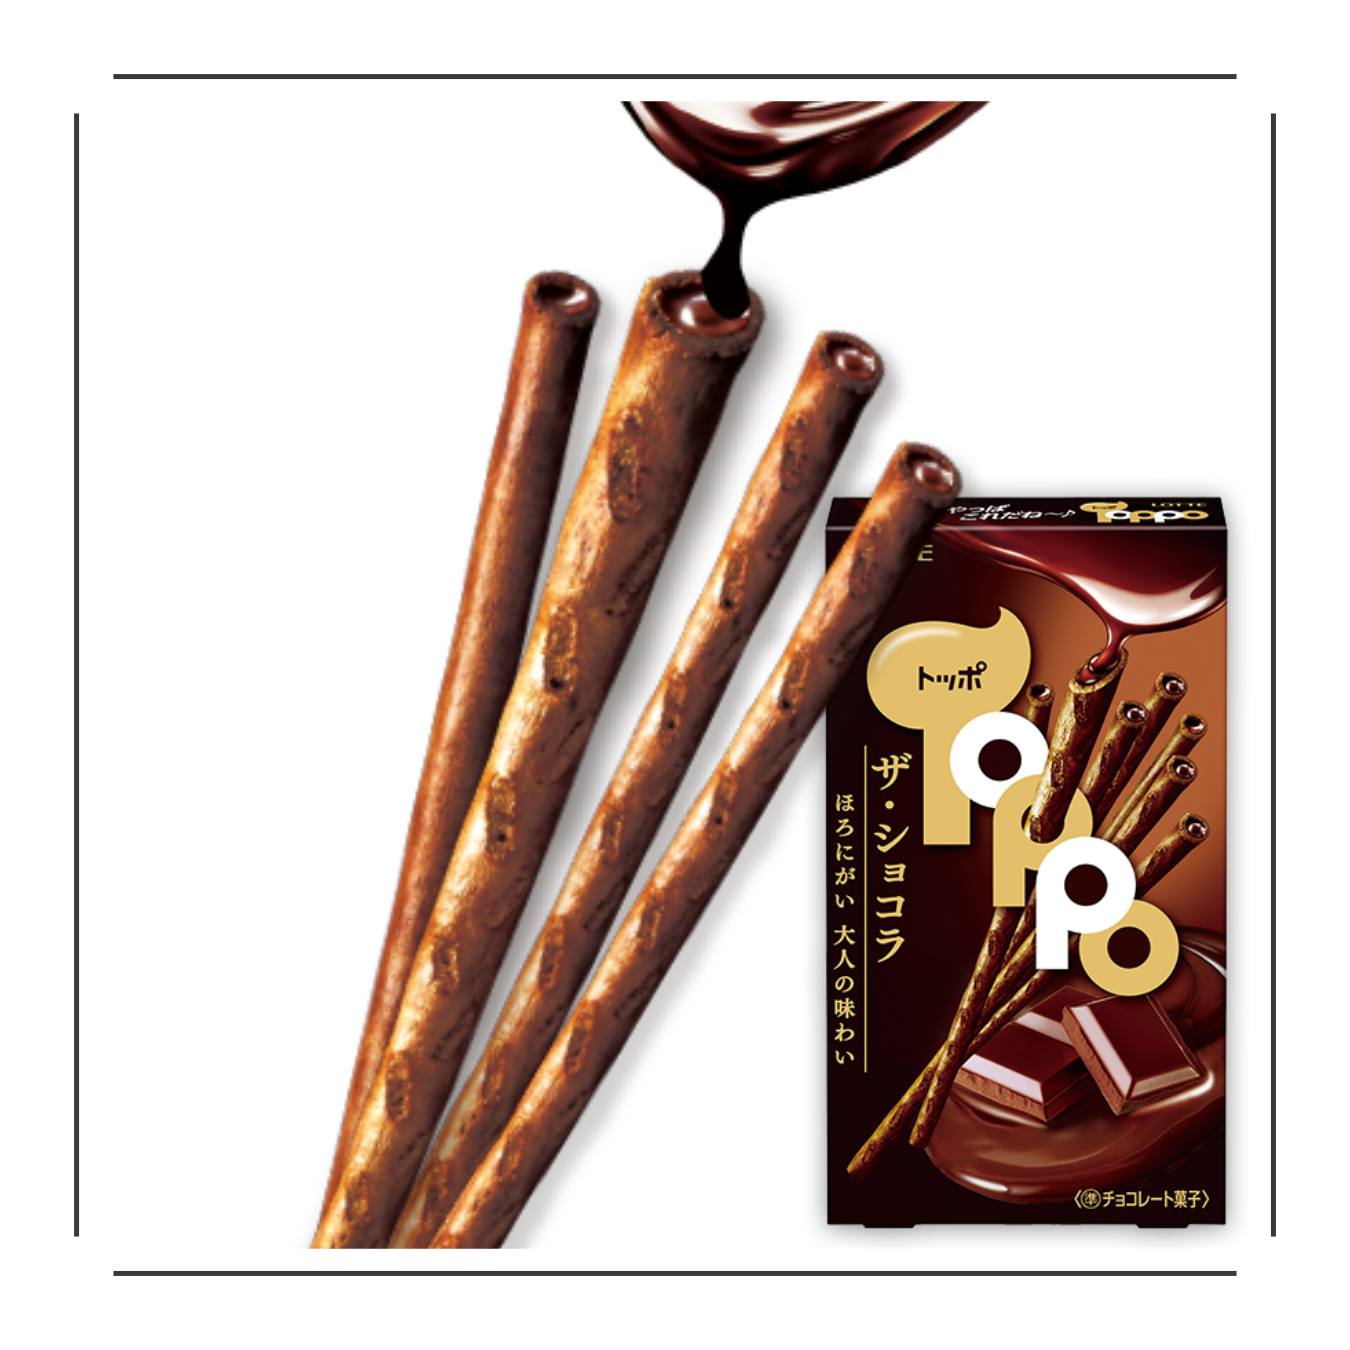 Lotte Toppo Dark Chocolate Sticks - JapanHapiness